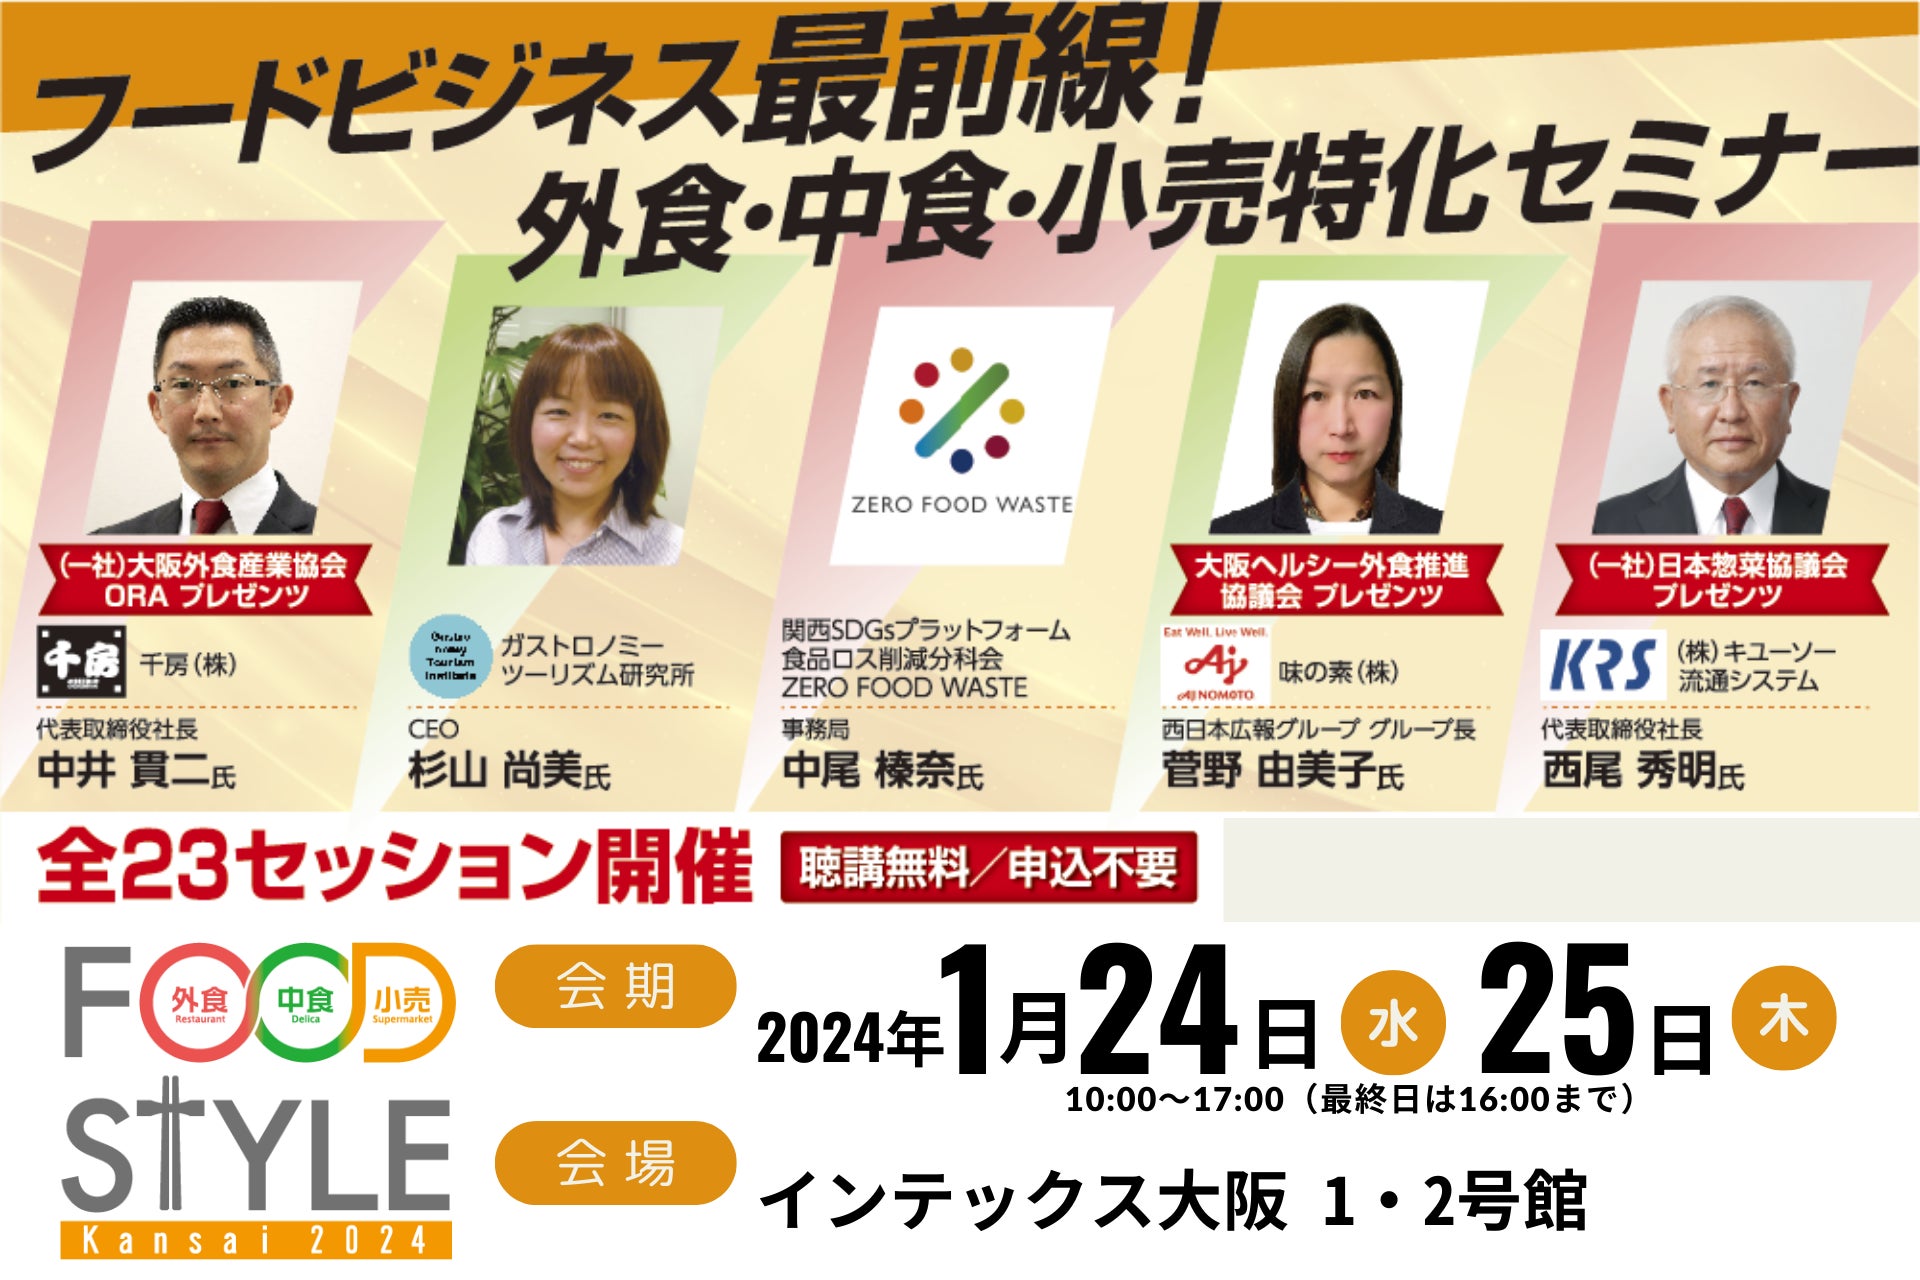 「栃木県B級グルメフェス」3月24日開催に向け
クラウドファンディングを開始！